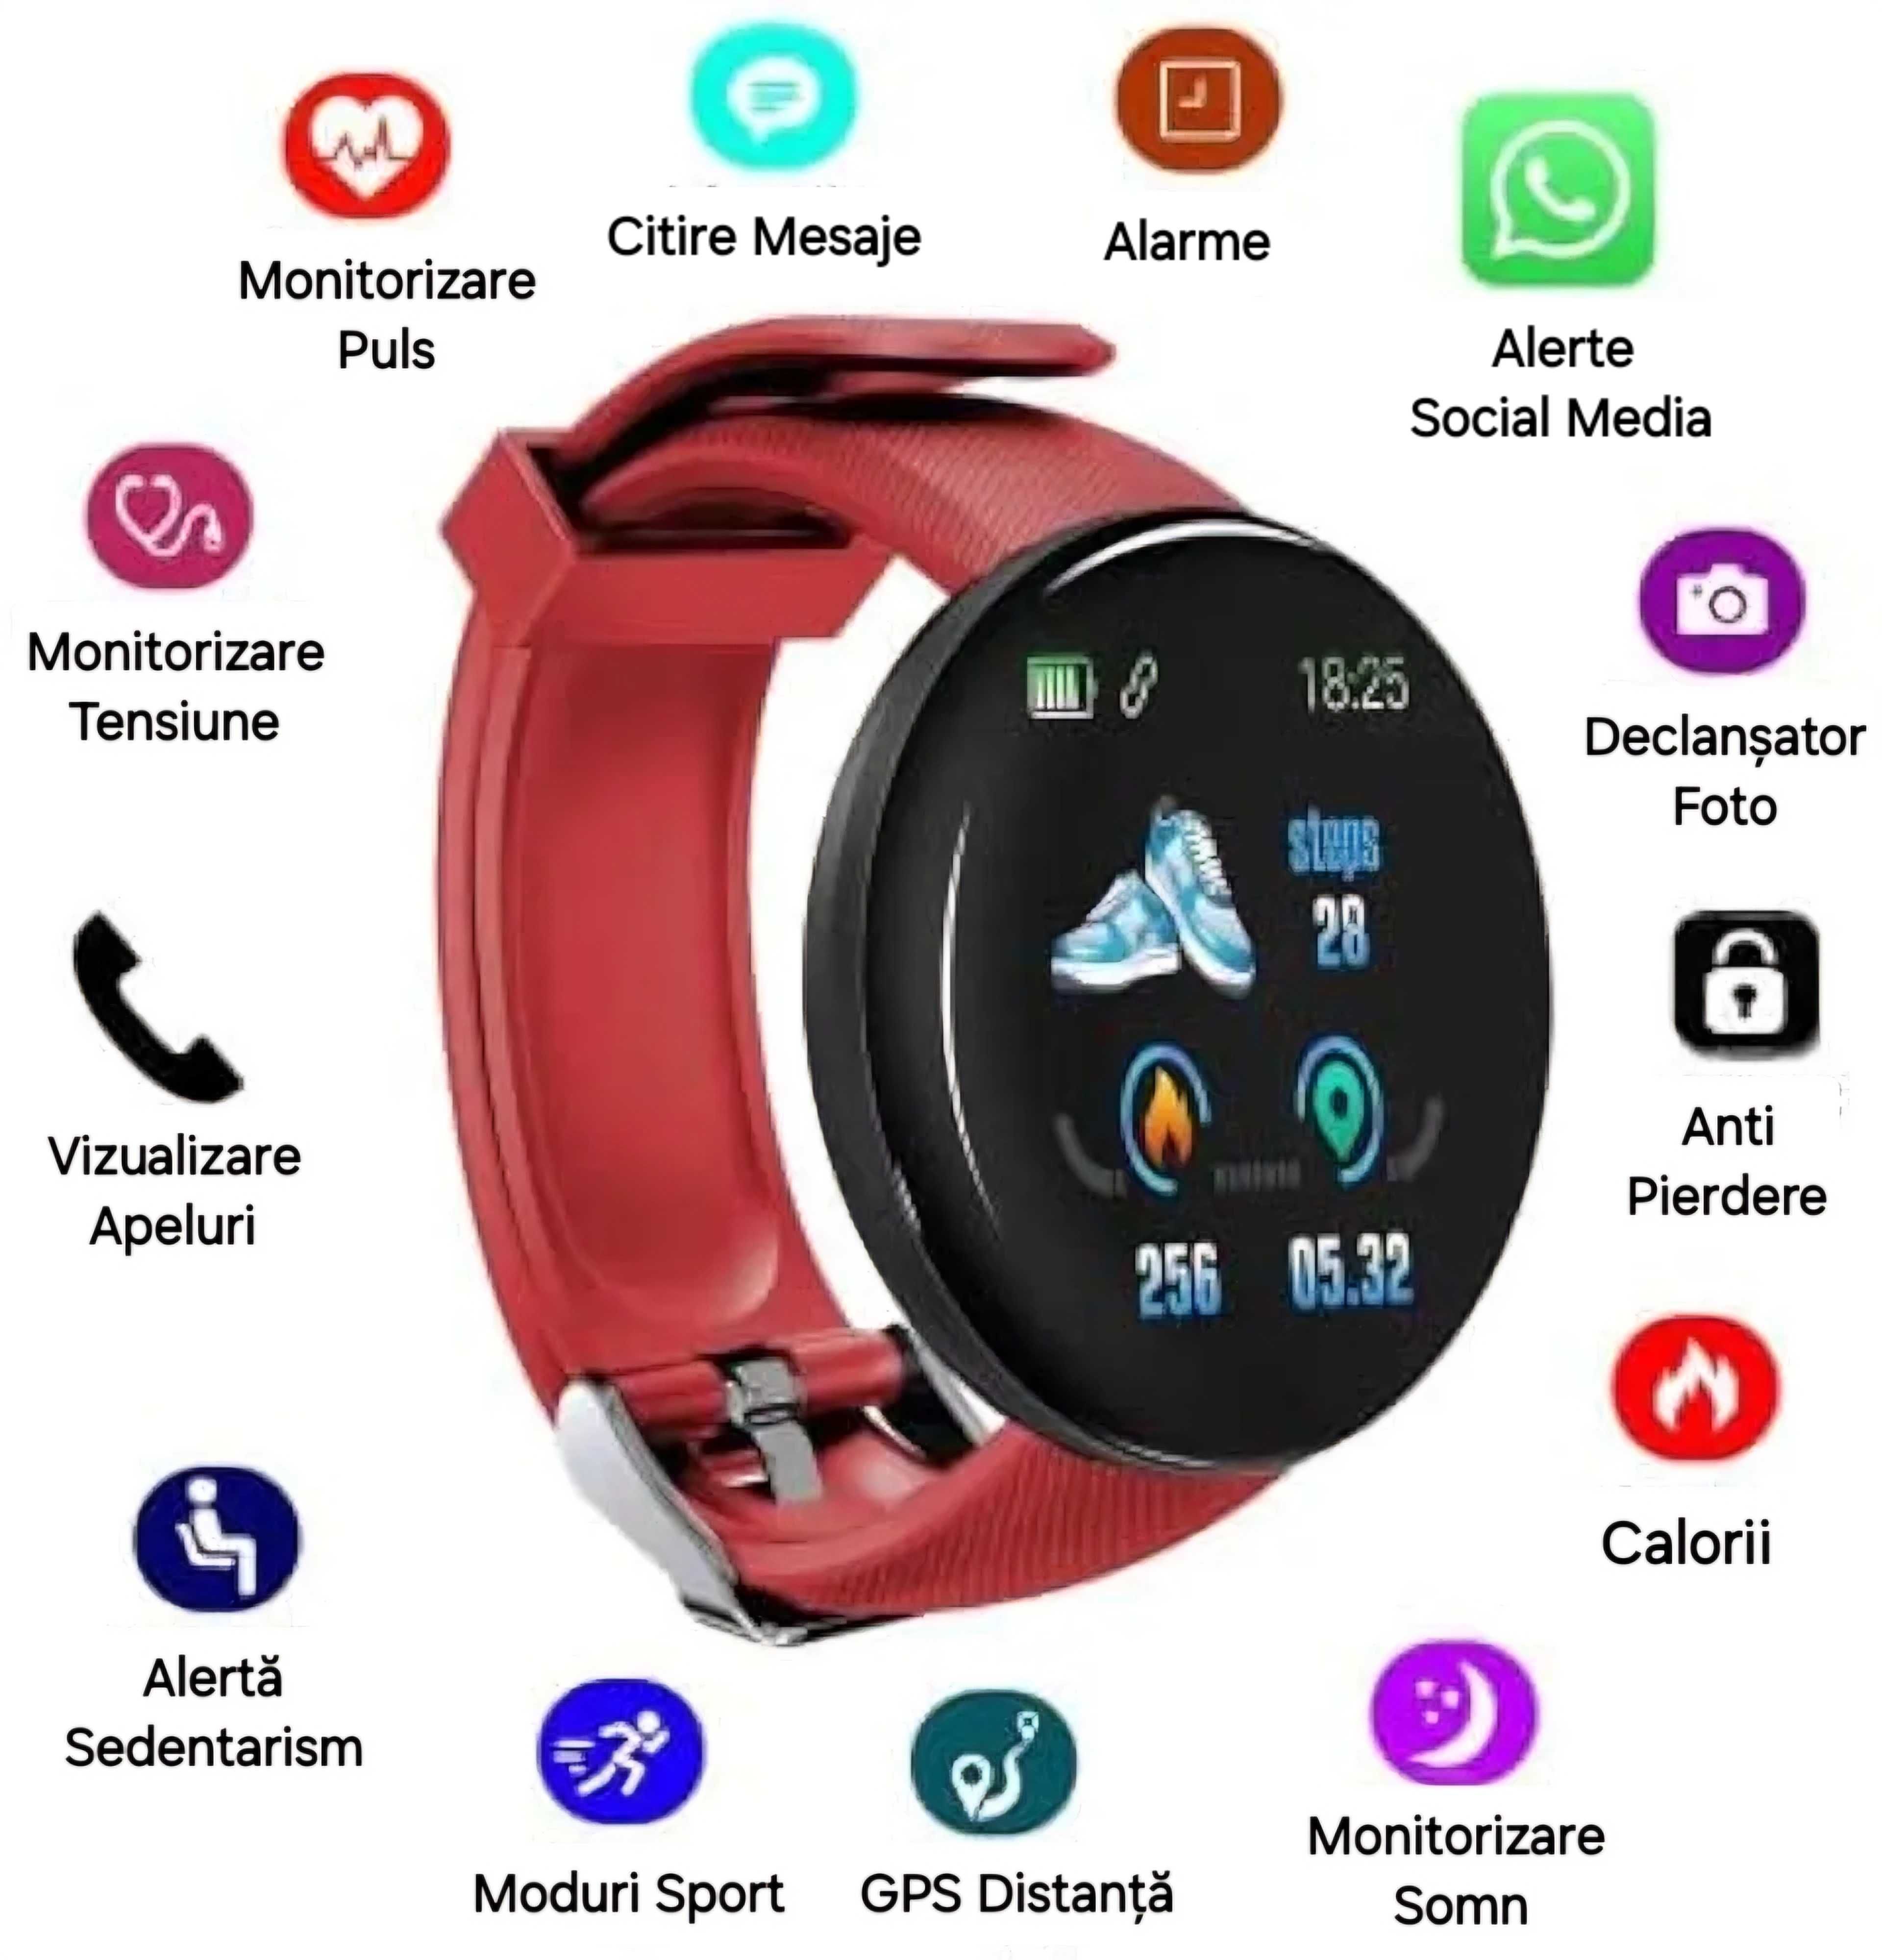 Set Smartwatch + 2 Curele Negru-Roșu. Vezi apeluri, mesaje, notificări